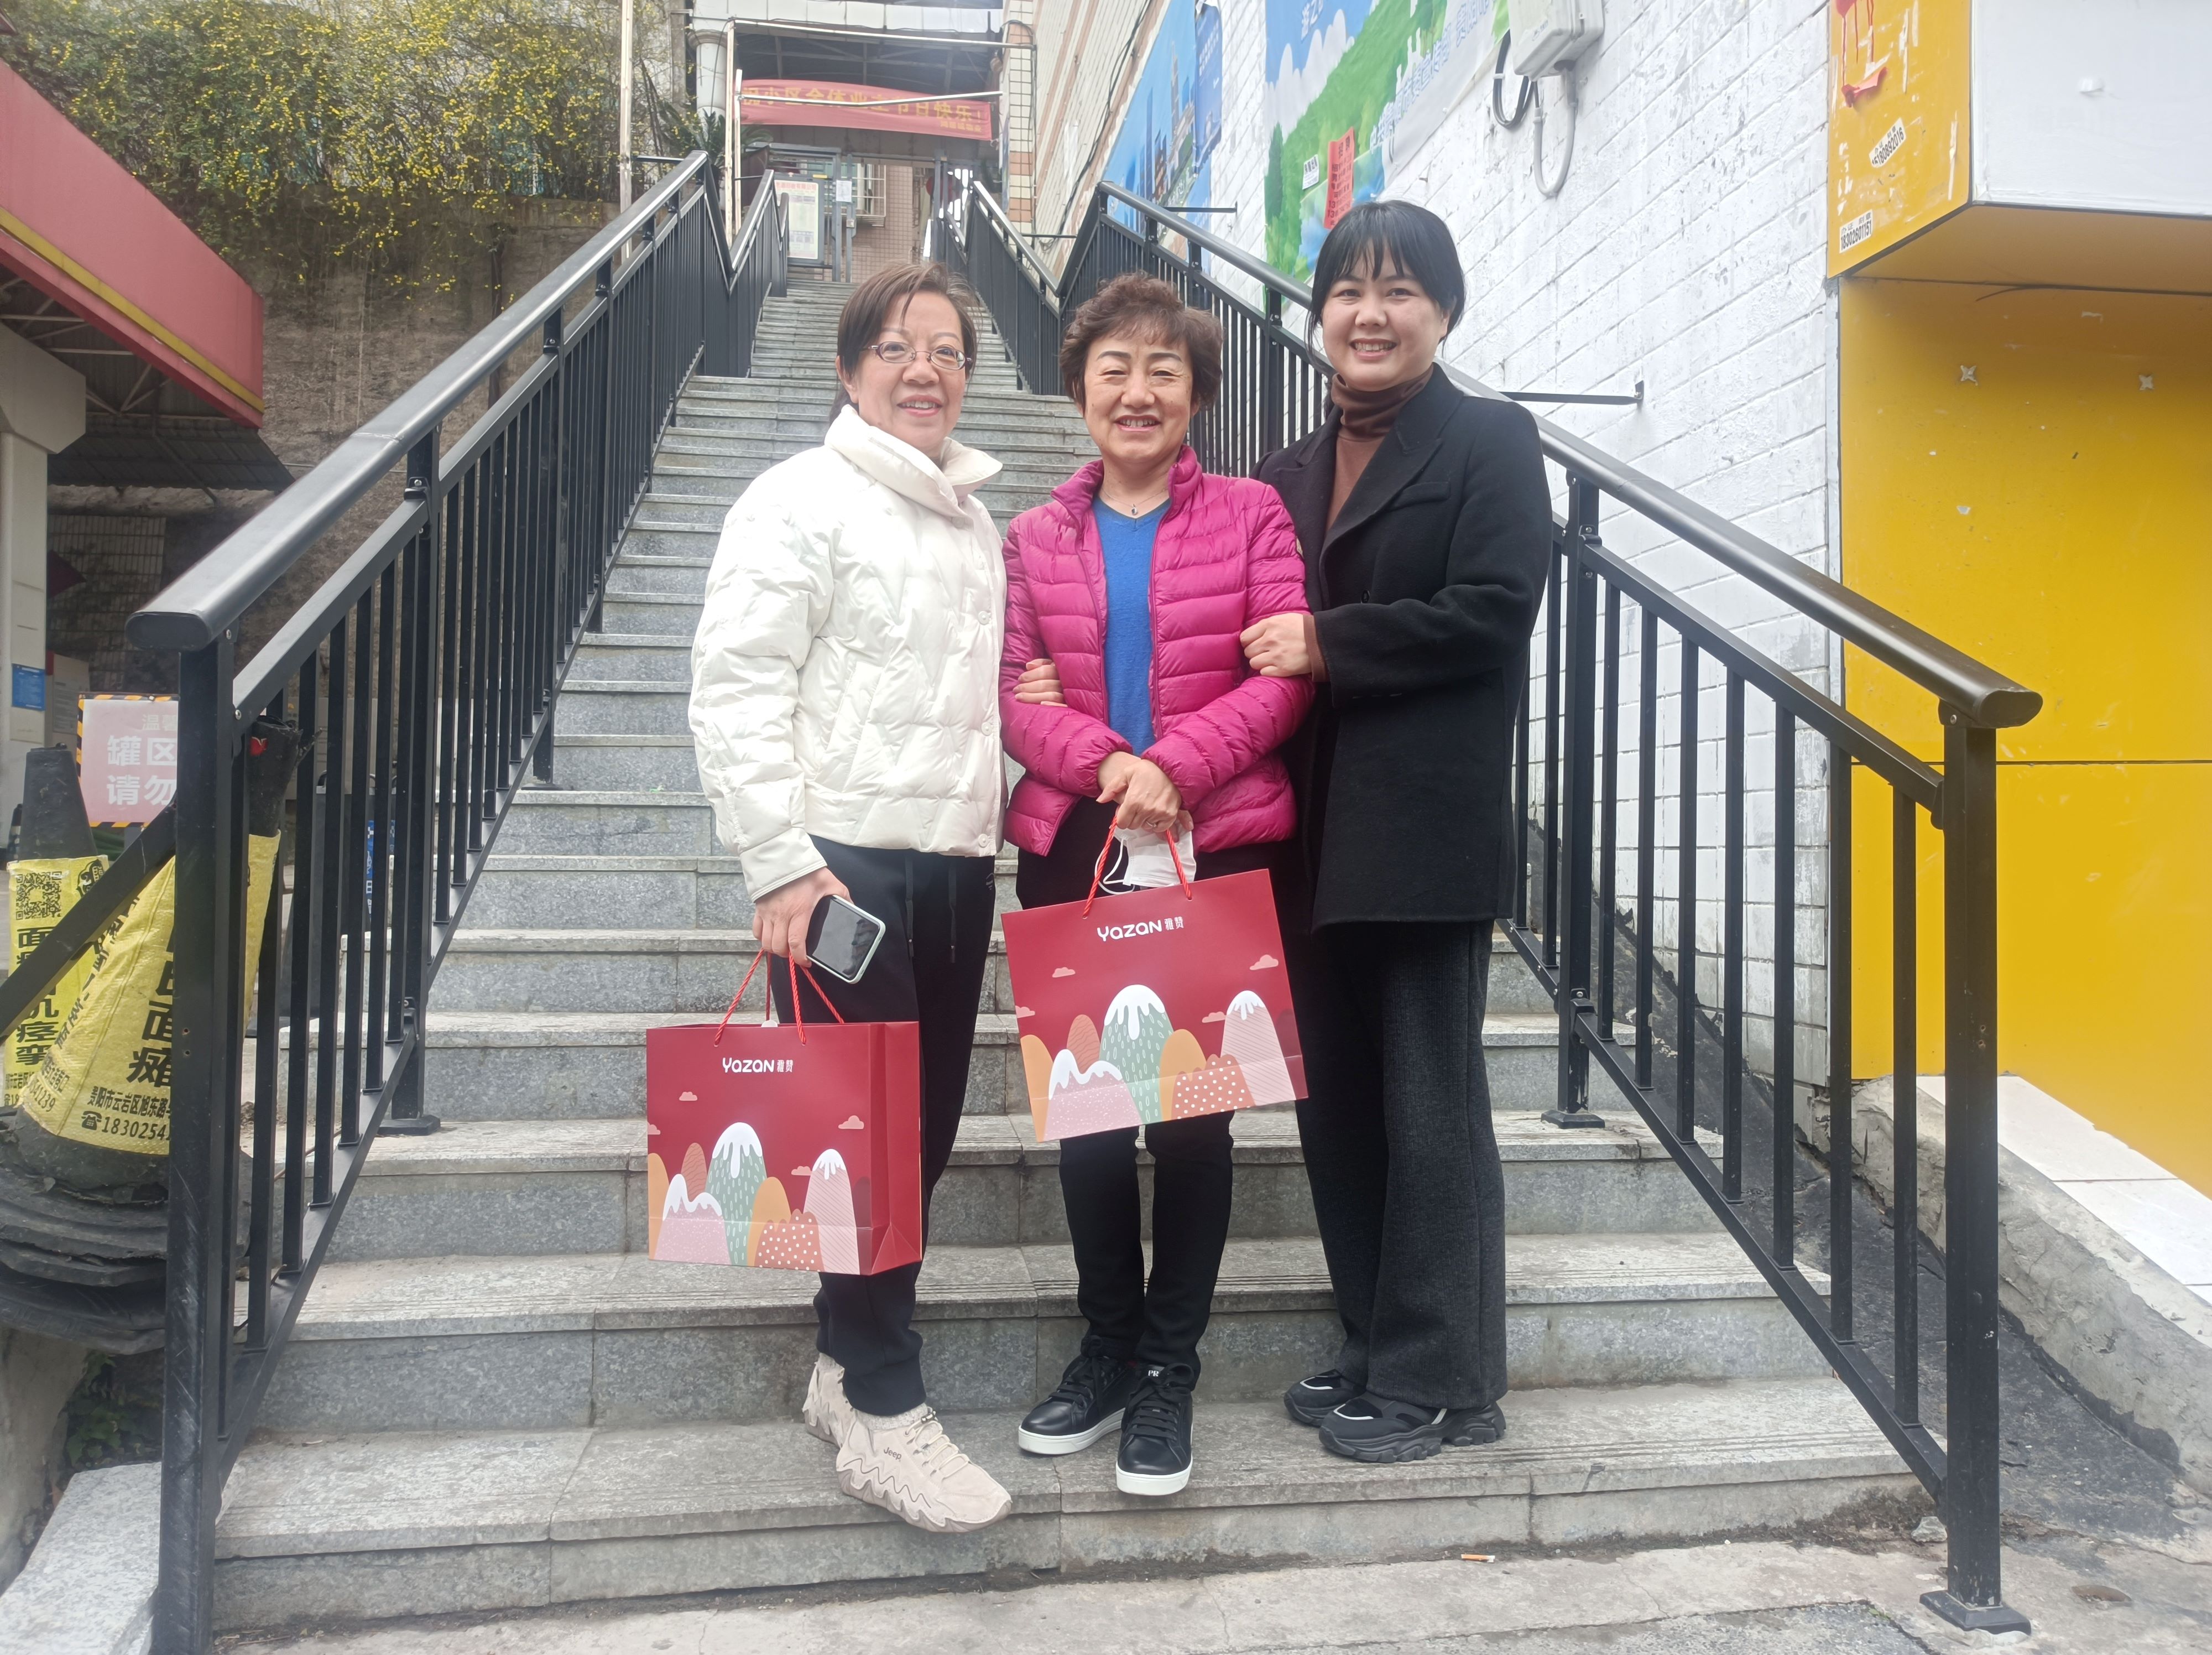 民航贵州空管分局后勤服务中心
“三八”妇女节走访慰问退休女职工